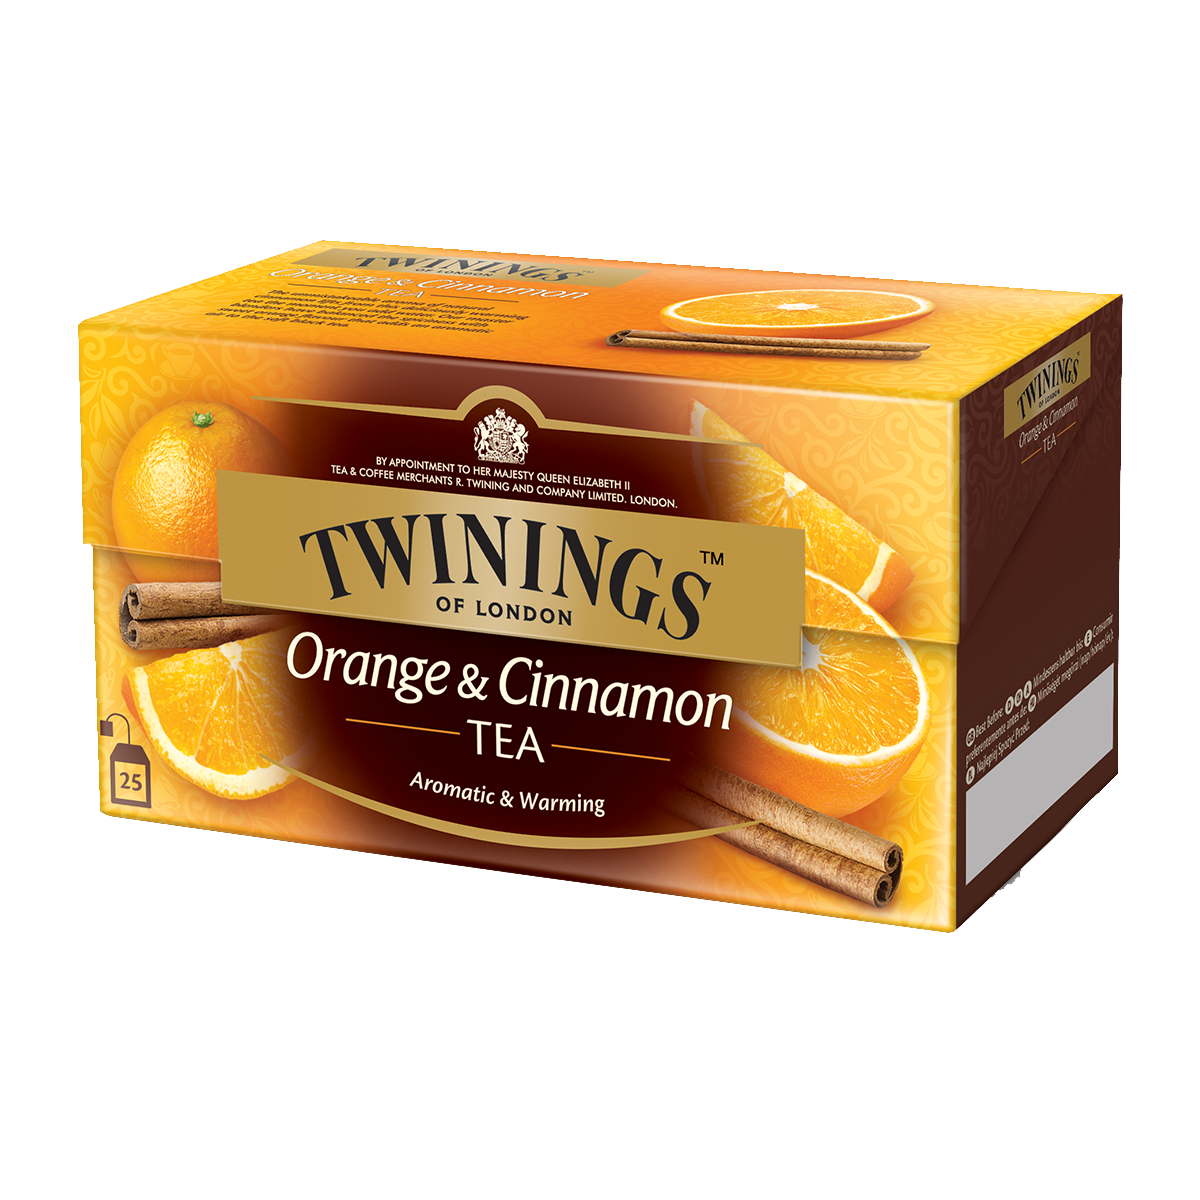  Orange & Cinnamon: le thé noir aromatisé